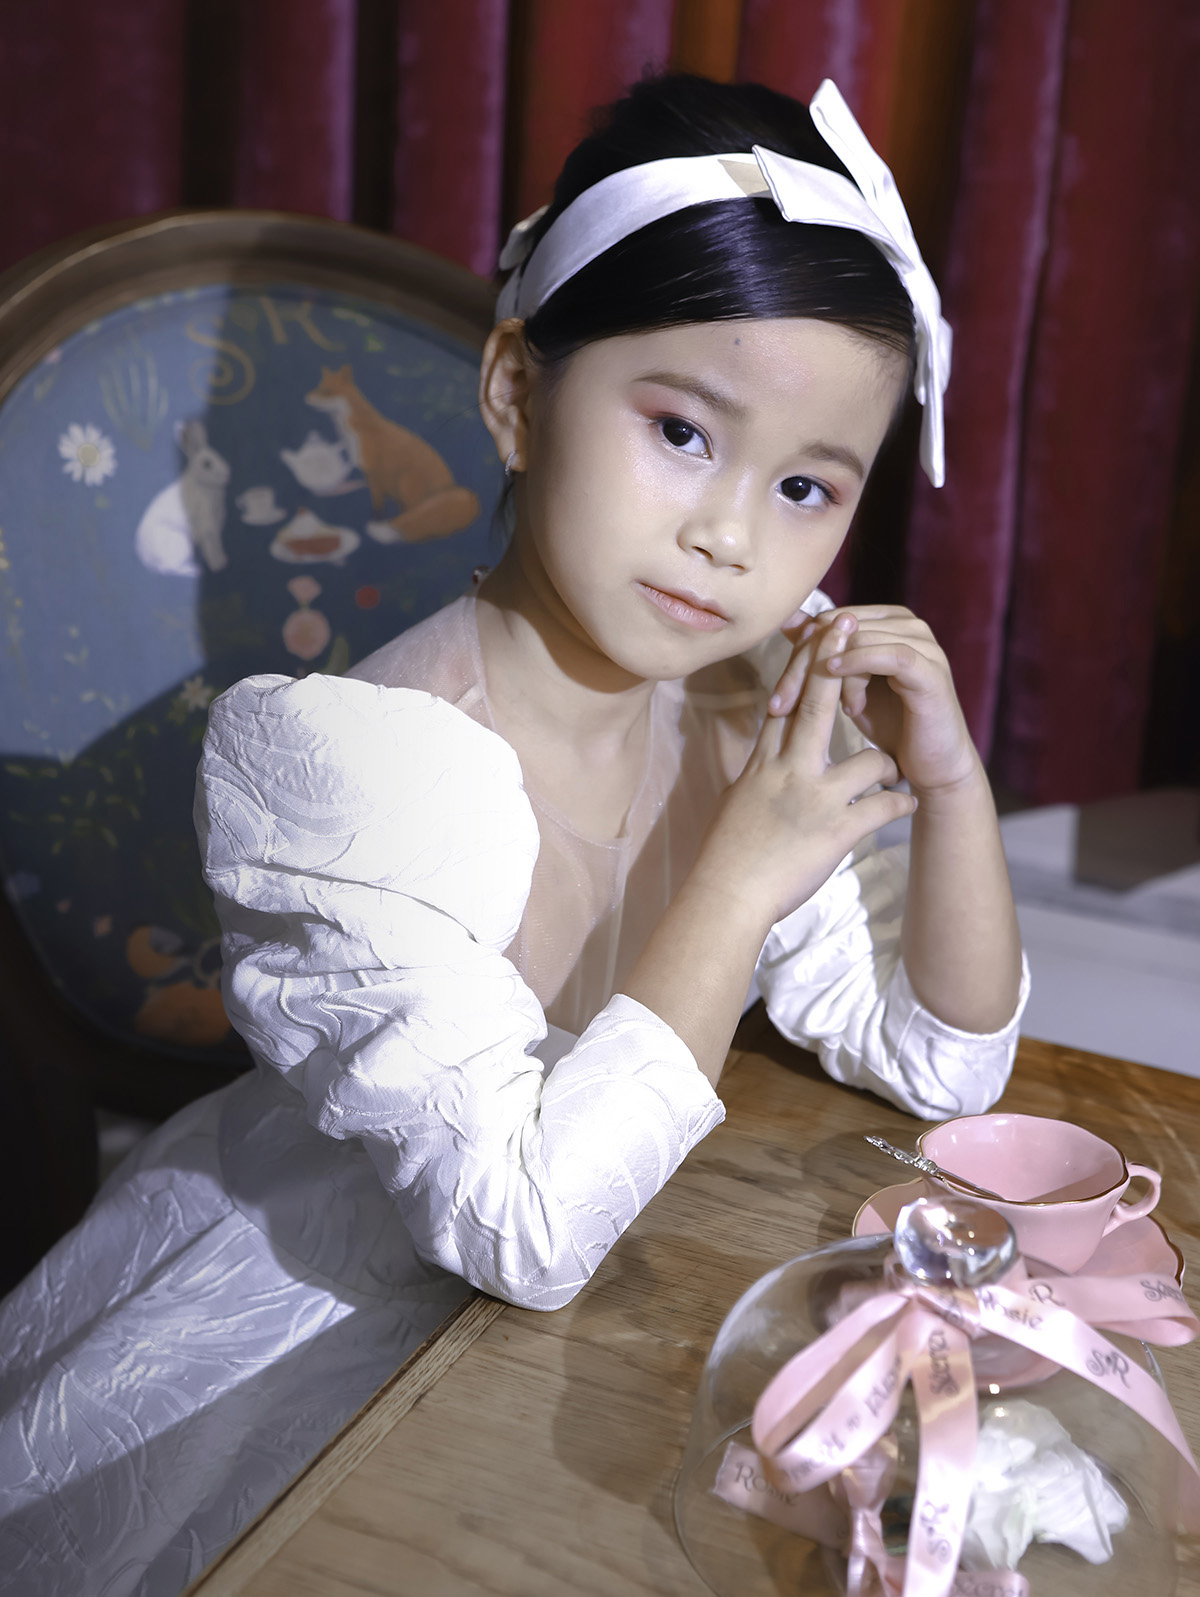 Mẫu nhí 7 tuổi Đồng Ngân hóa thân thành công chúa trong thiết kế của Nguyễn Minh Công